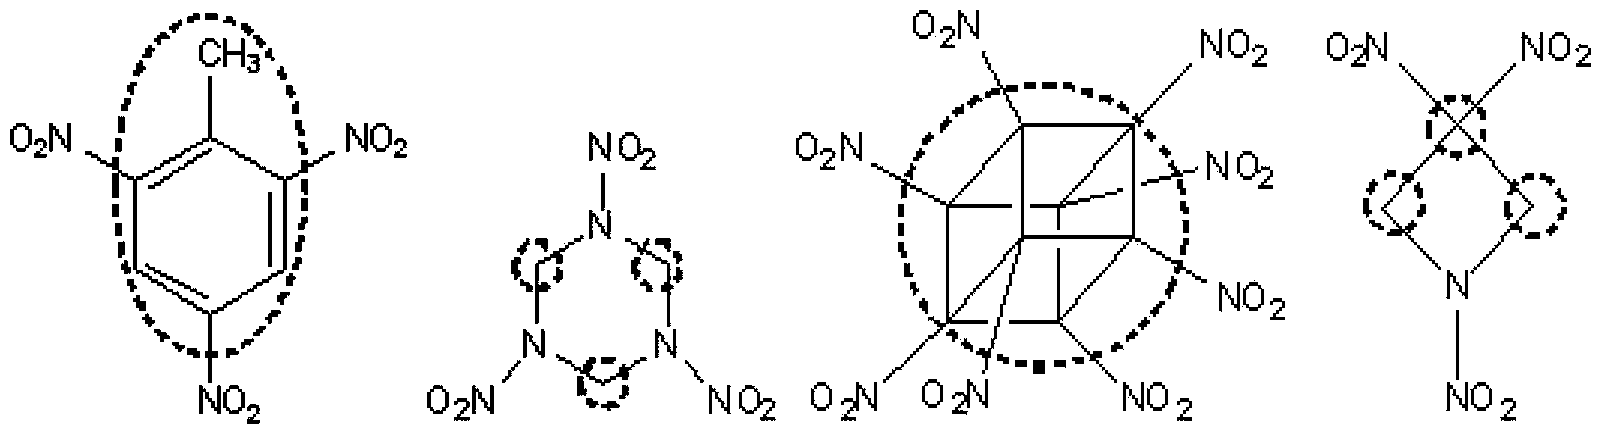 Method of synthesizing 5,5'-bistetrazole-1,1'-dioxodihydroxy ammonium salt